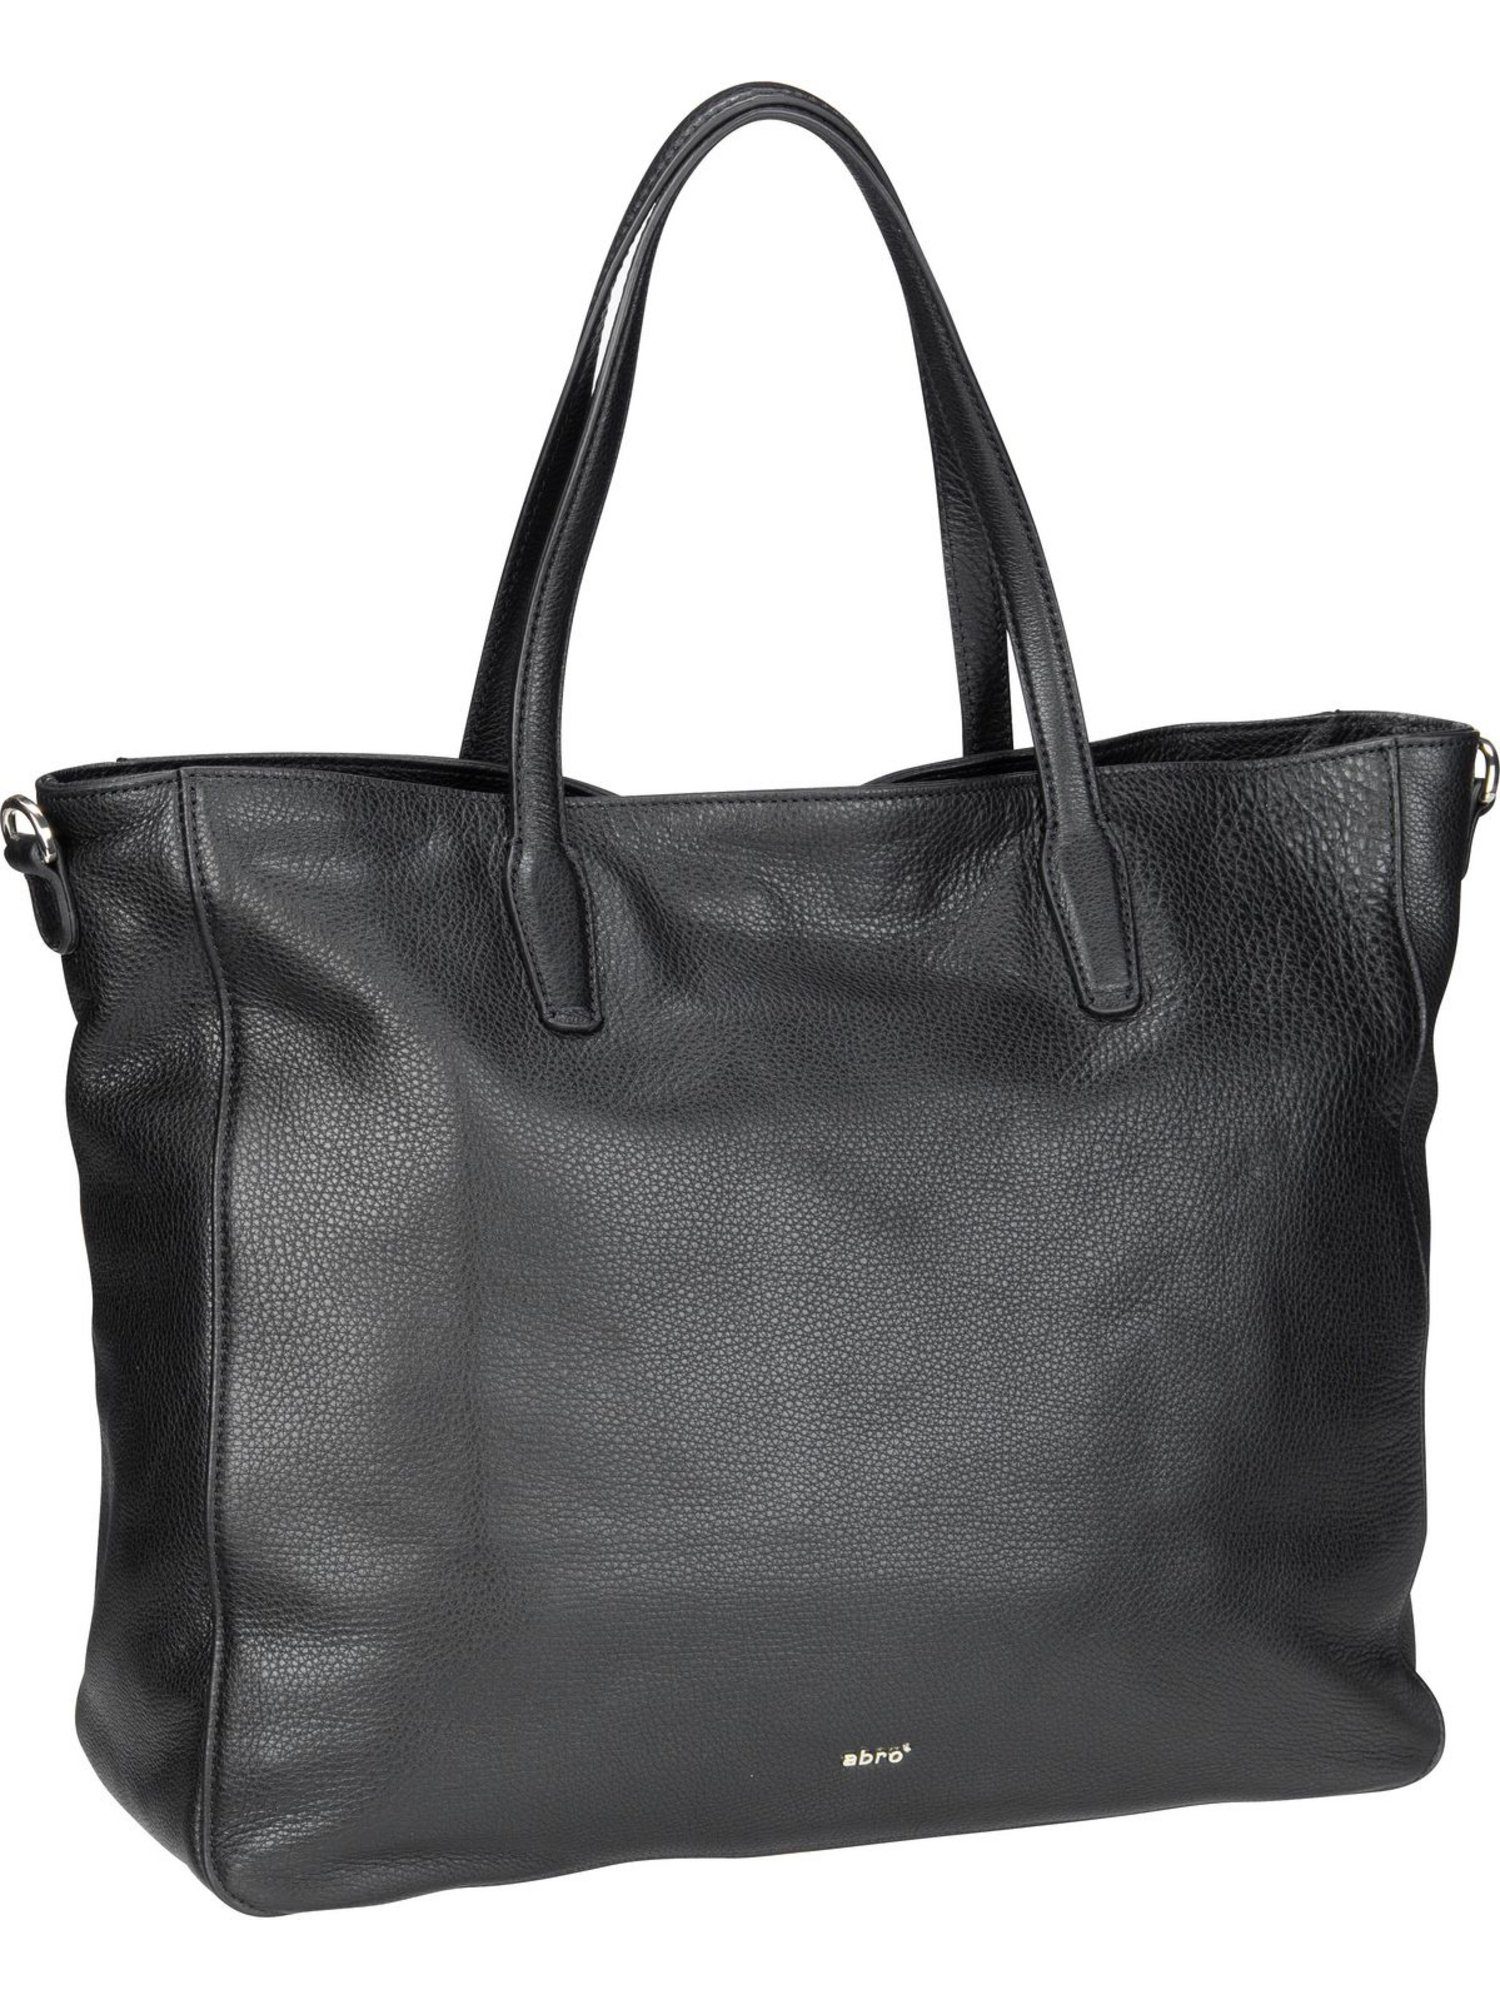 Abro Handtasche »Jamie 29580«, Shopper online kaufen | OTTO